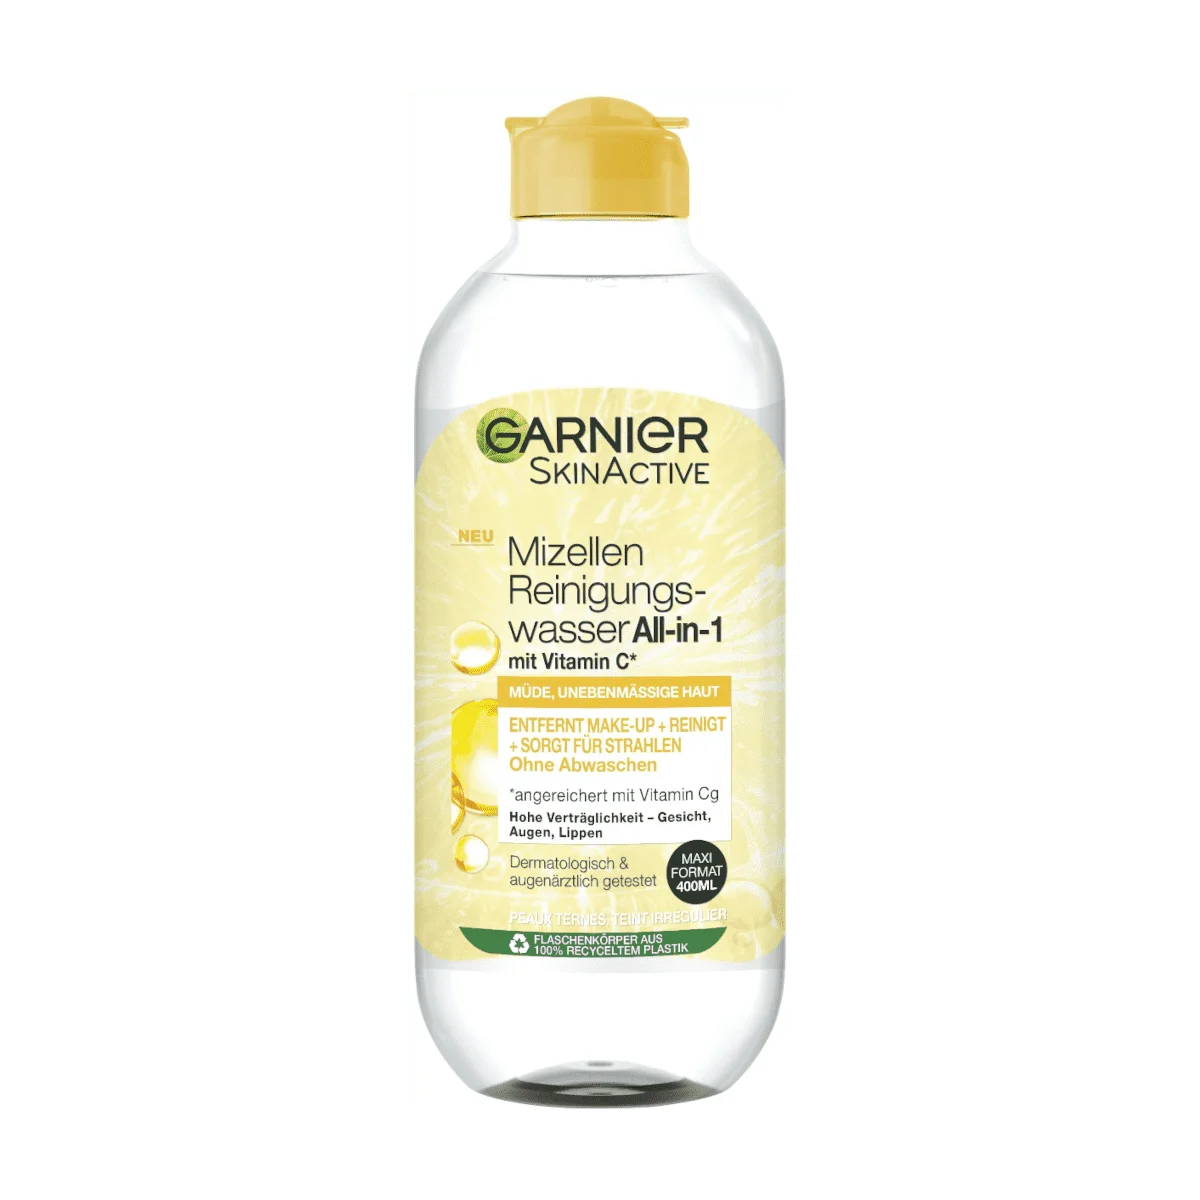 Garnier SkinActive Mizellen Reinigungswasser All-in-1 mit Vitamin C, 400 ml